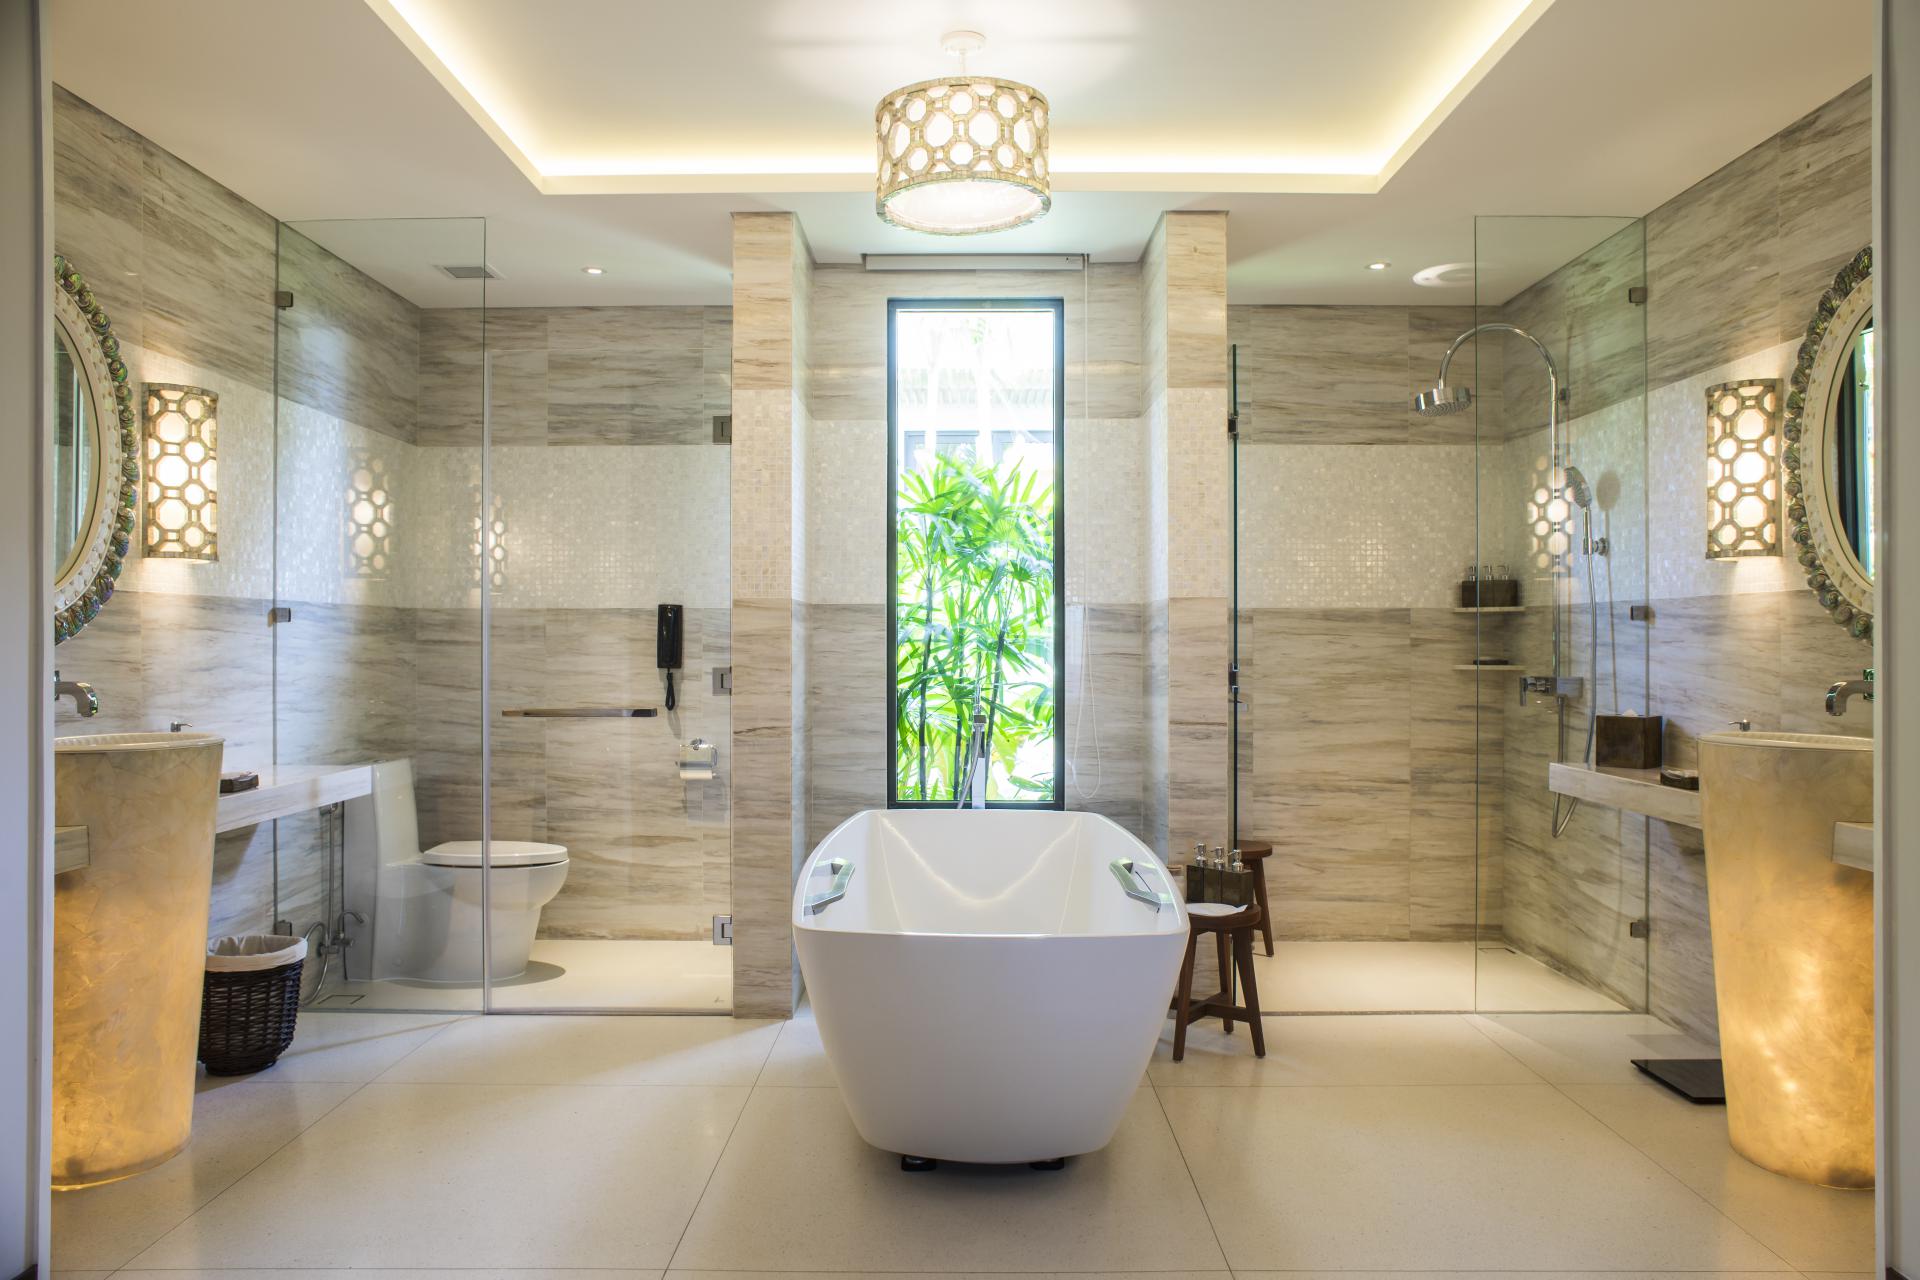 10 ý tưởng trang trí phòng tắm tuyệt đẹp giúp việc chuẩn bị trở nên dễ dàng hơn rất nhiều